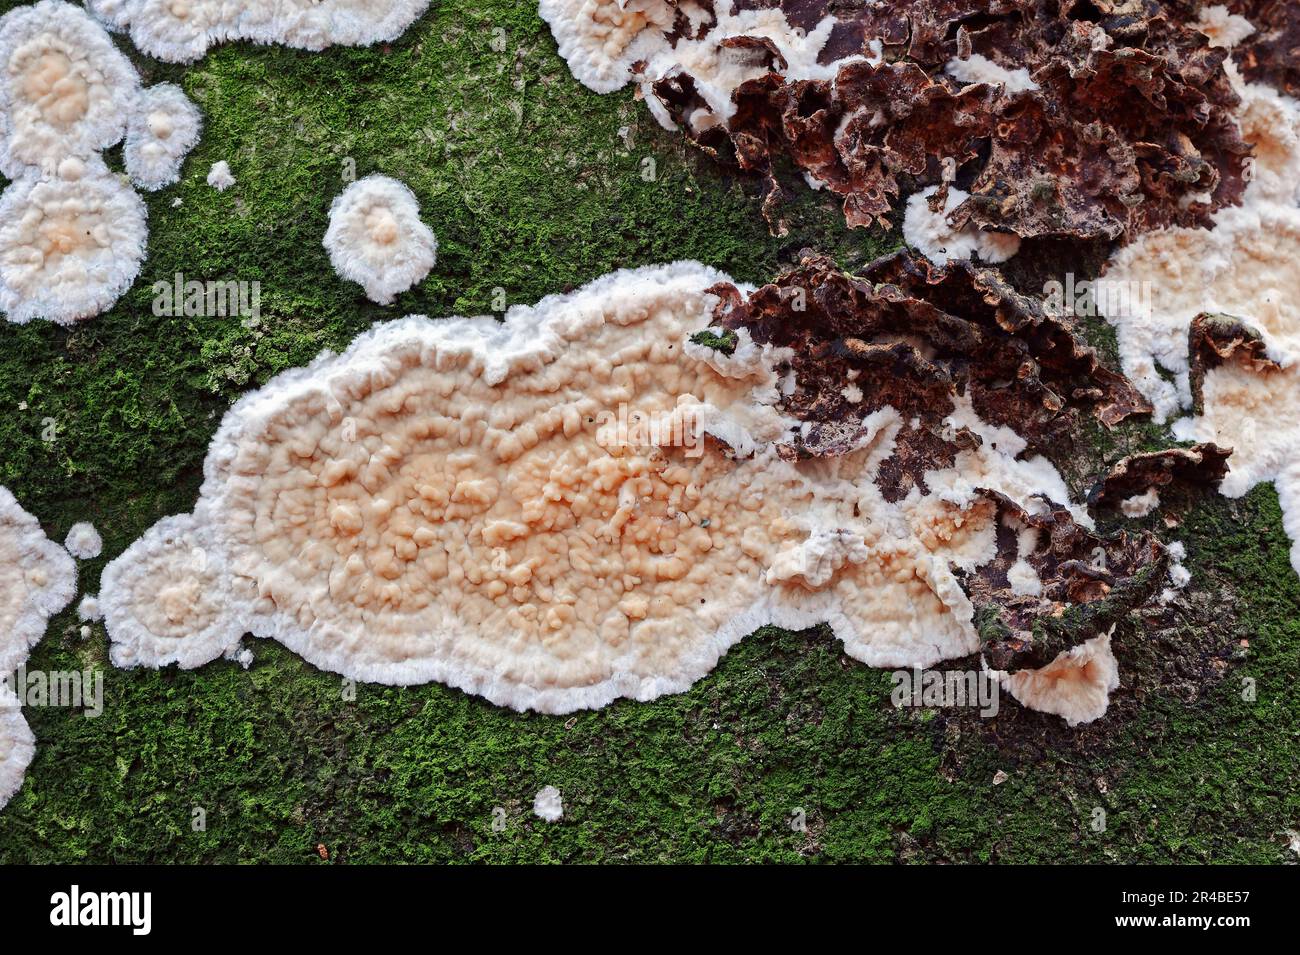 Detached bark fungus, North Rhine-Westphalia (Cylindrobasidium laeve) (Cylindrobasidium evolvens), detached bark fungus, Germany Stock Photo